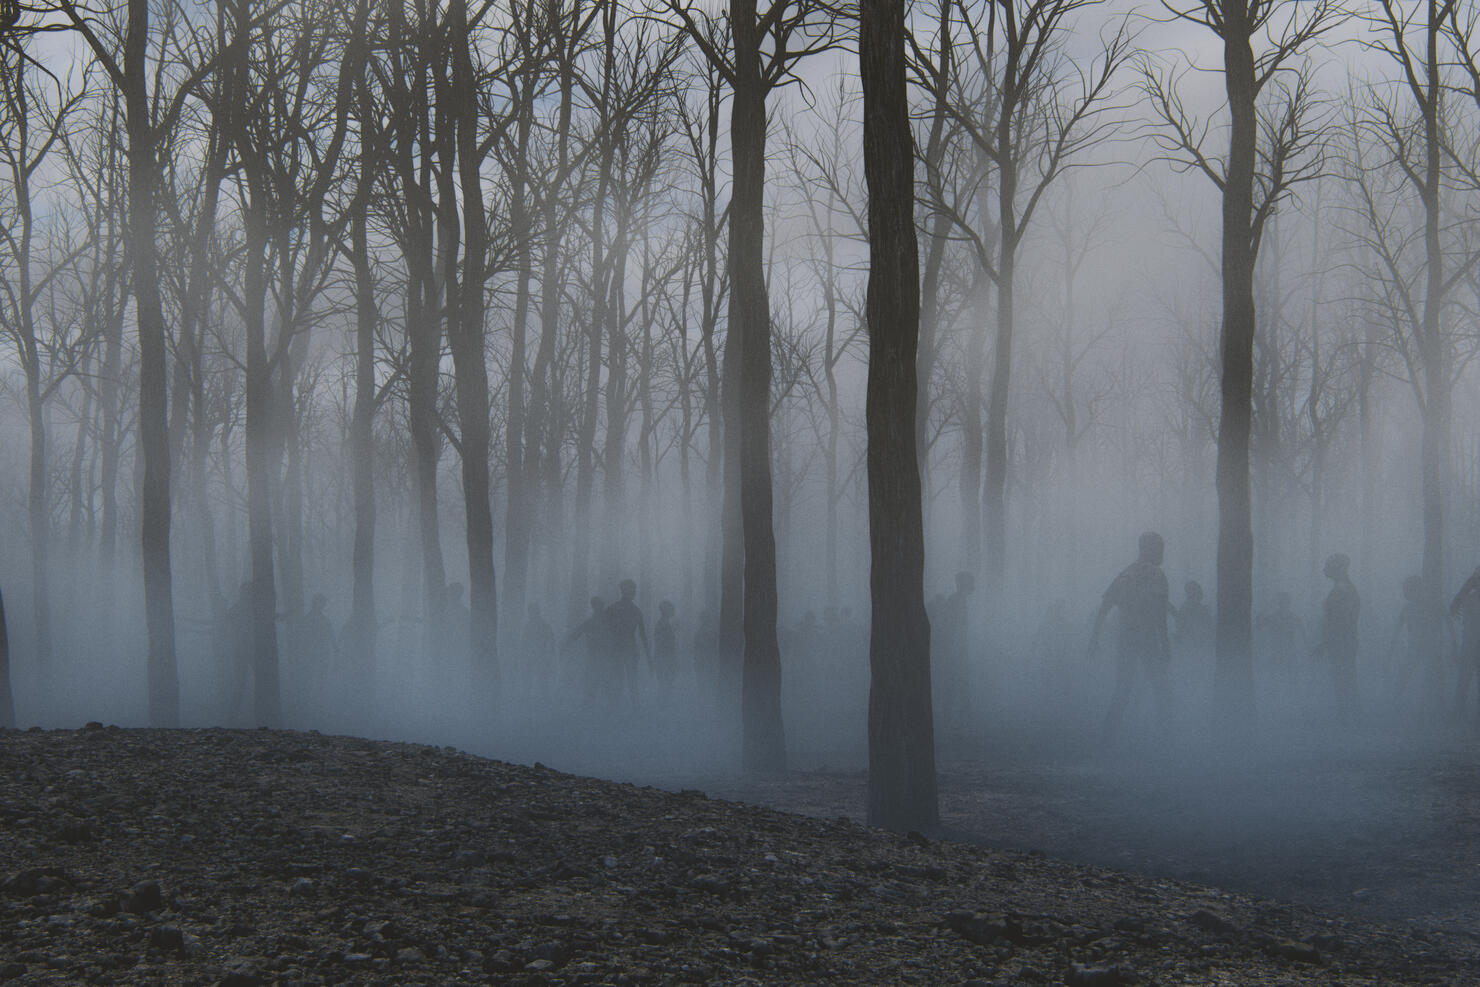 Spooky foggy forest full of walking dead zombies